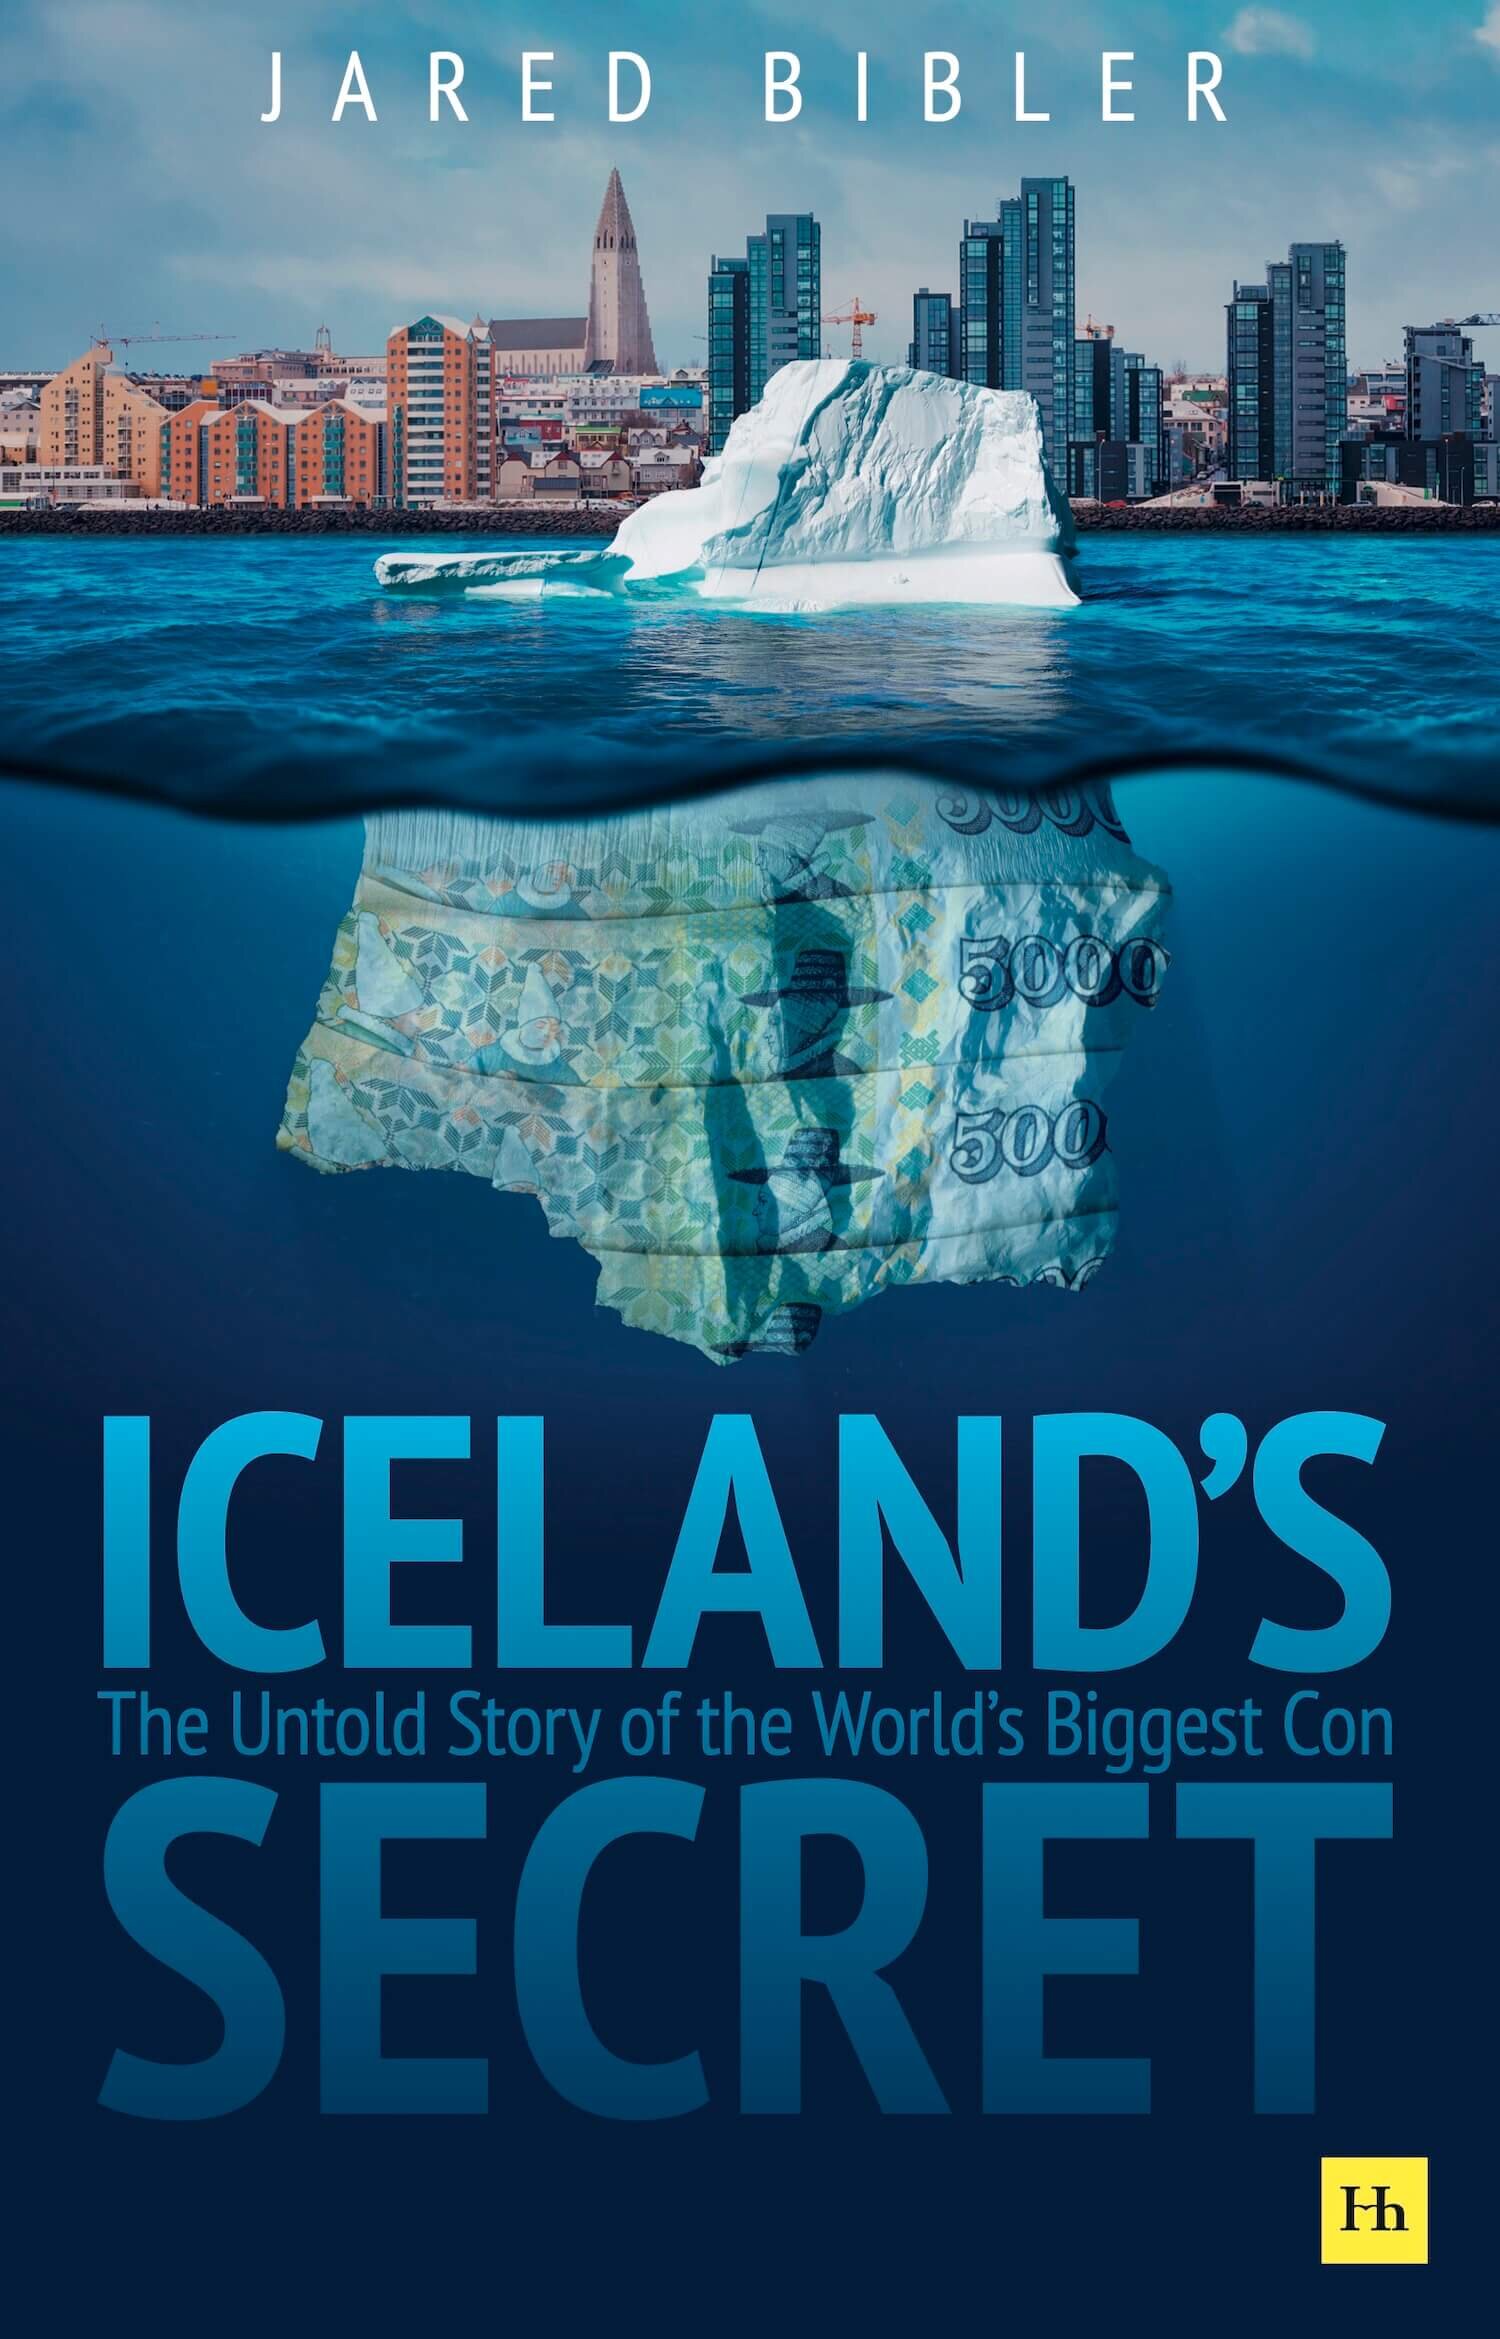 IcelandsSecret-frontcover-FINAL (1).jpeg